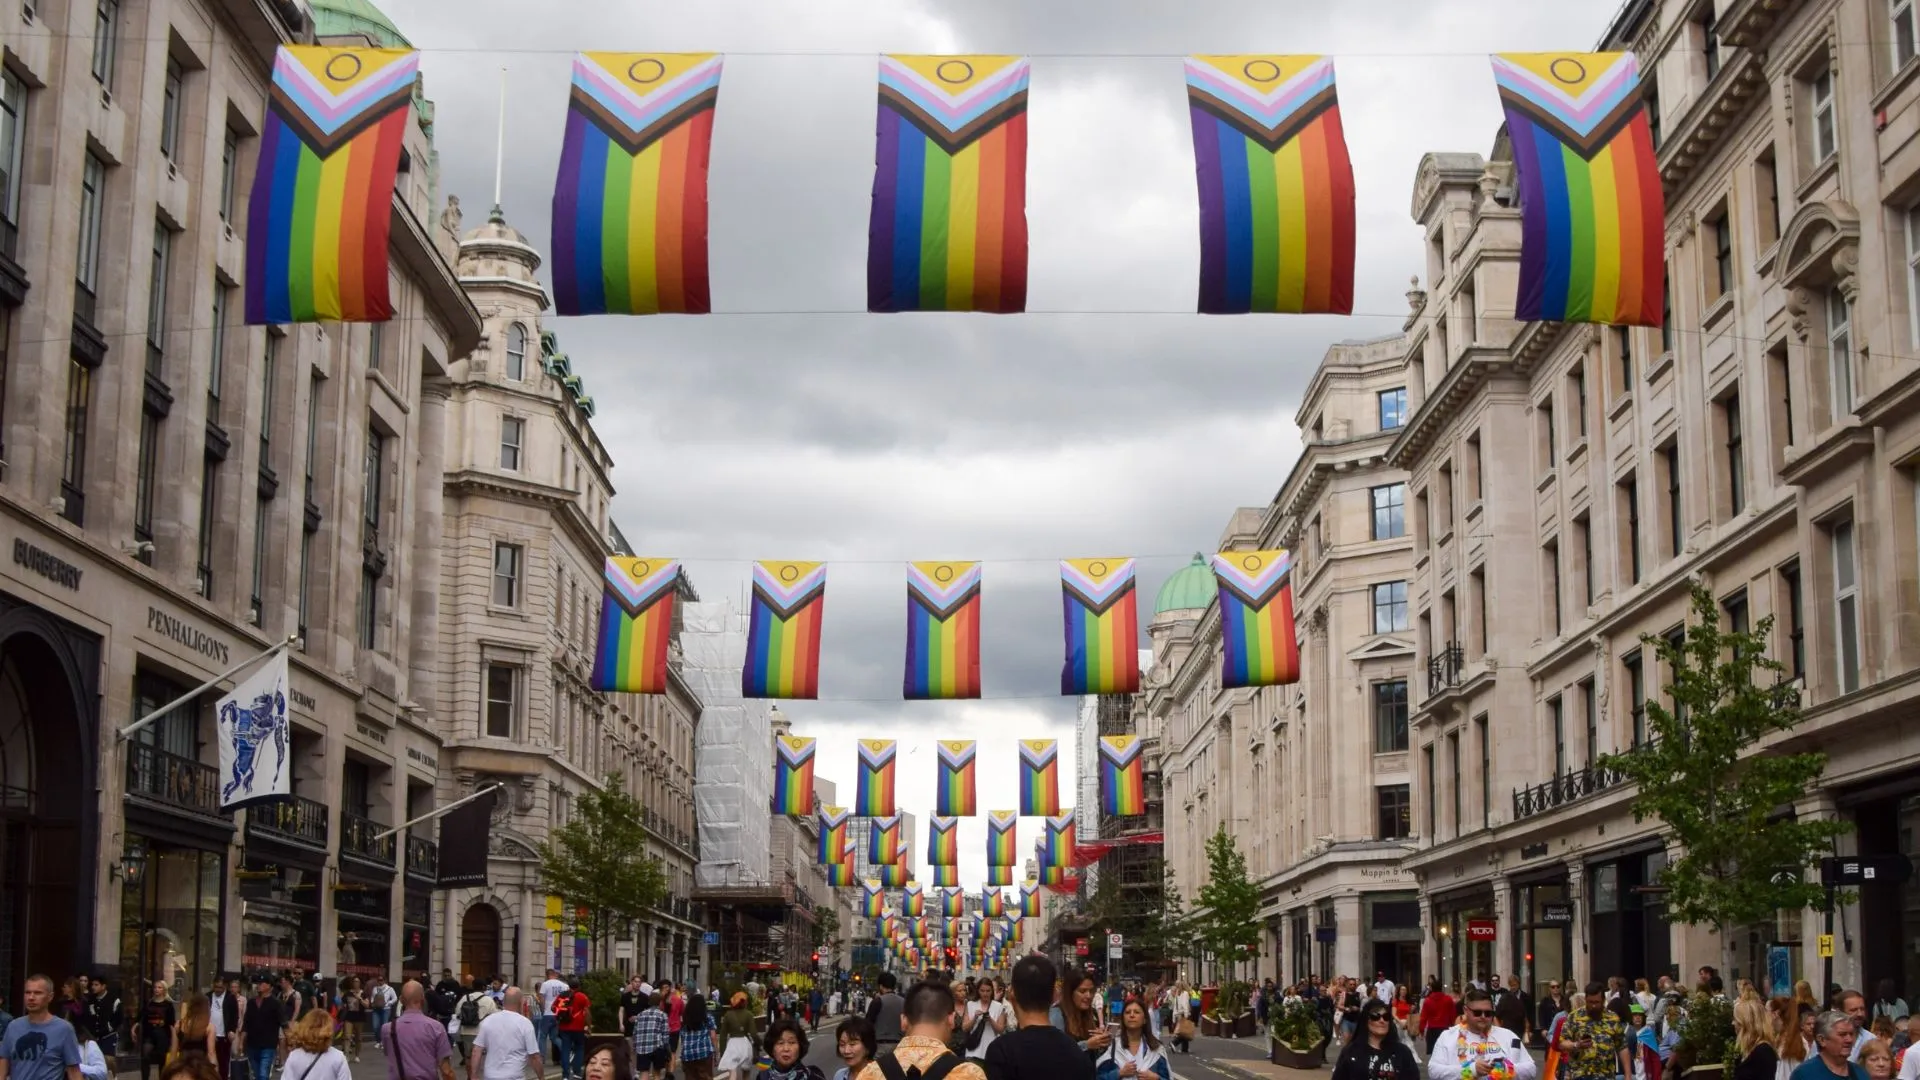 Un grupo cristiano lanza una petición contra las "feas" y "divisivas" banderas del Orgullo en Londres